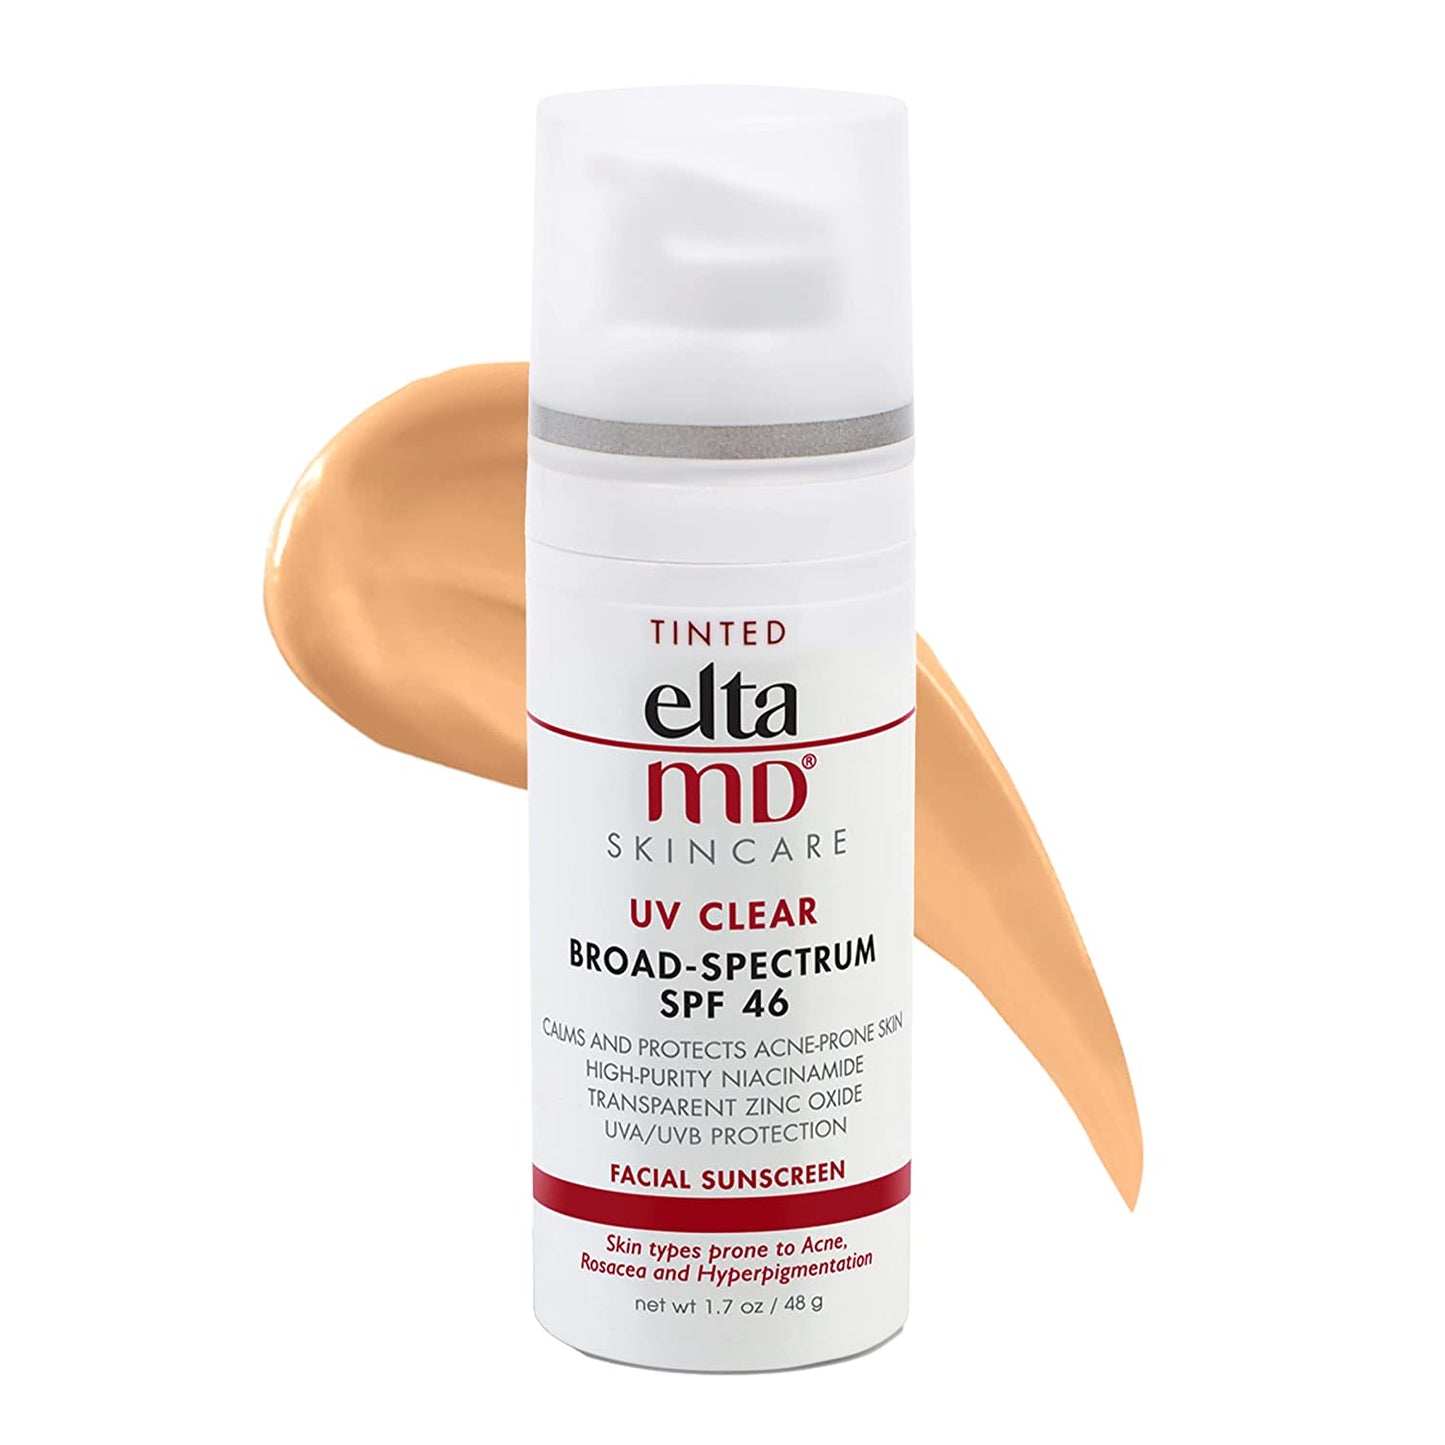 EltaMD UV Clear Face Sunscreen